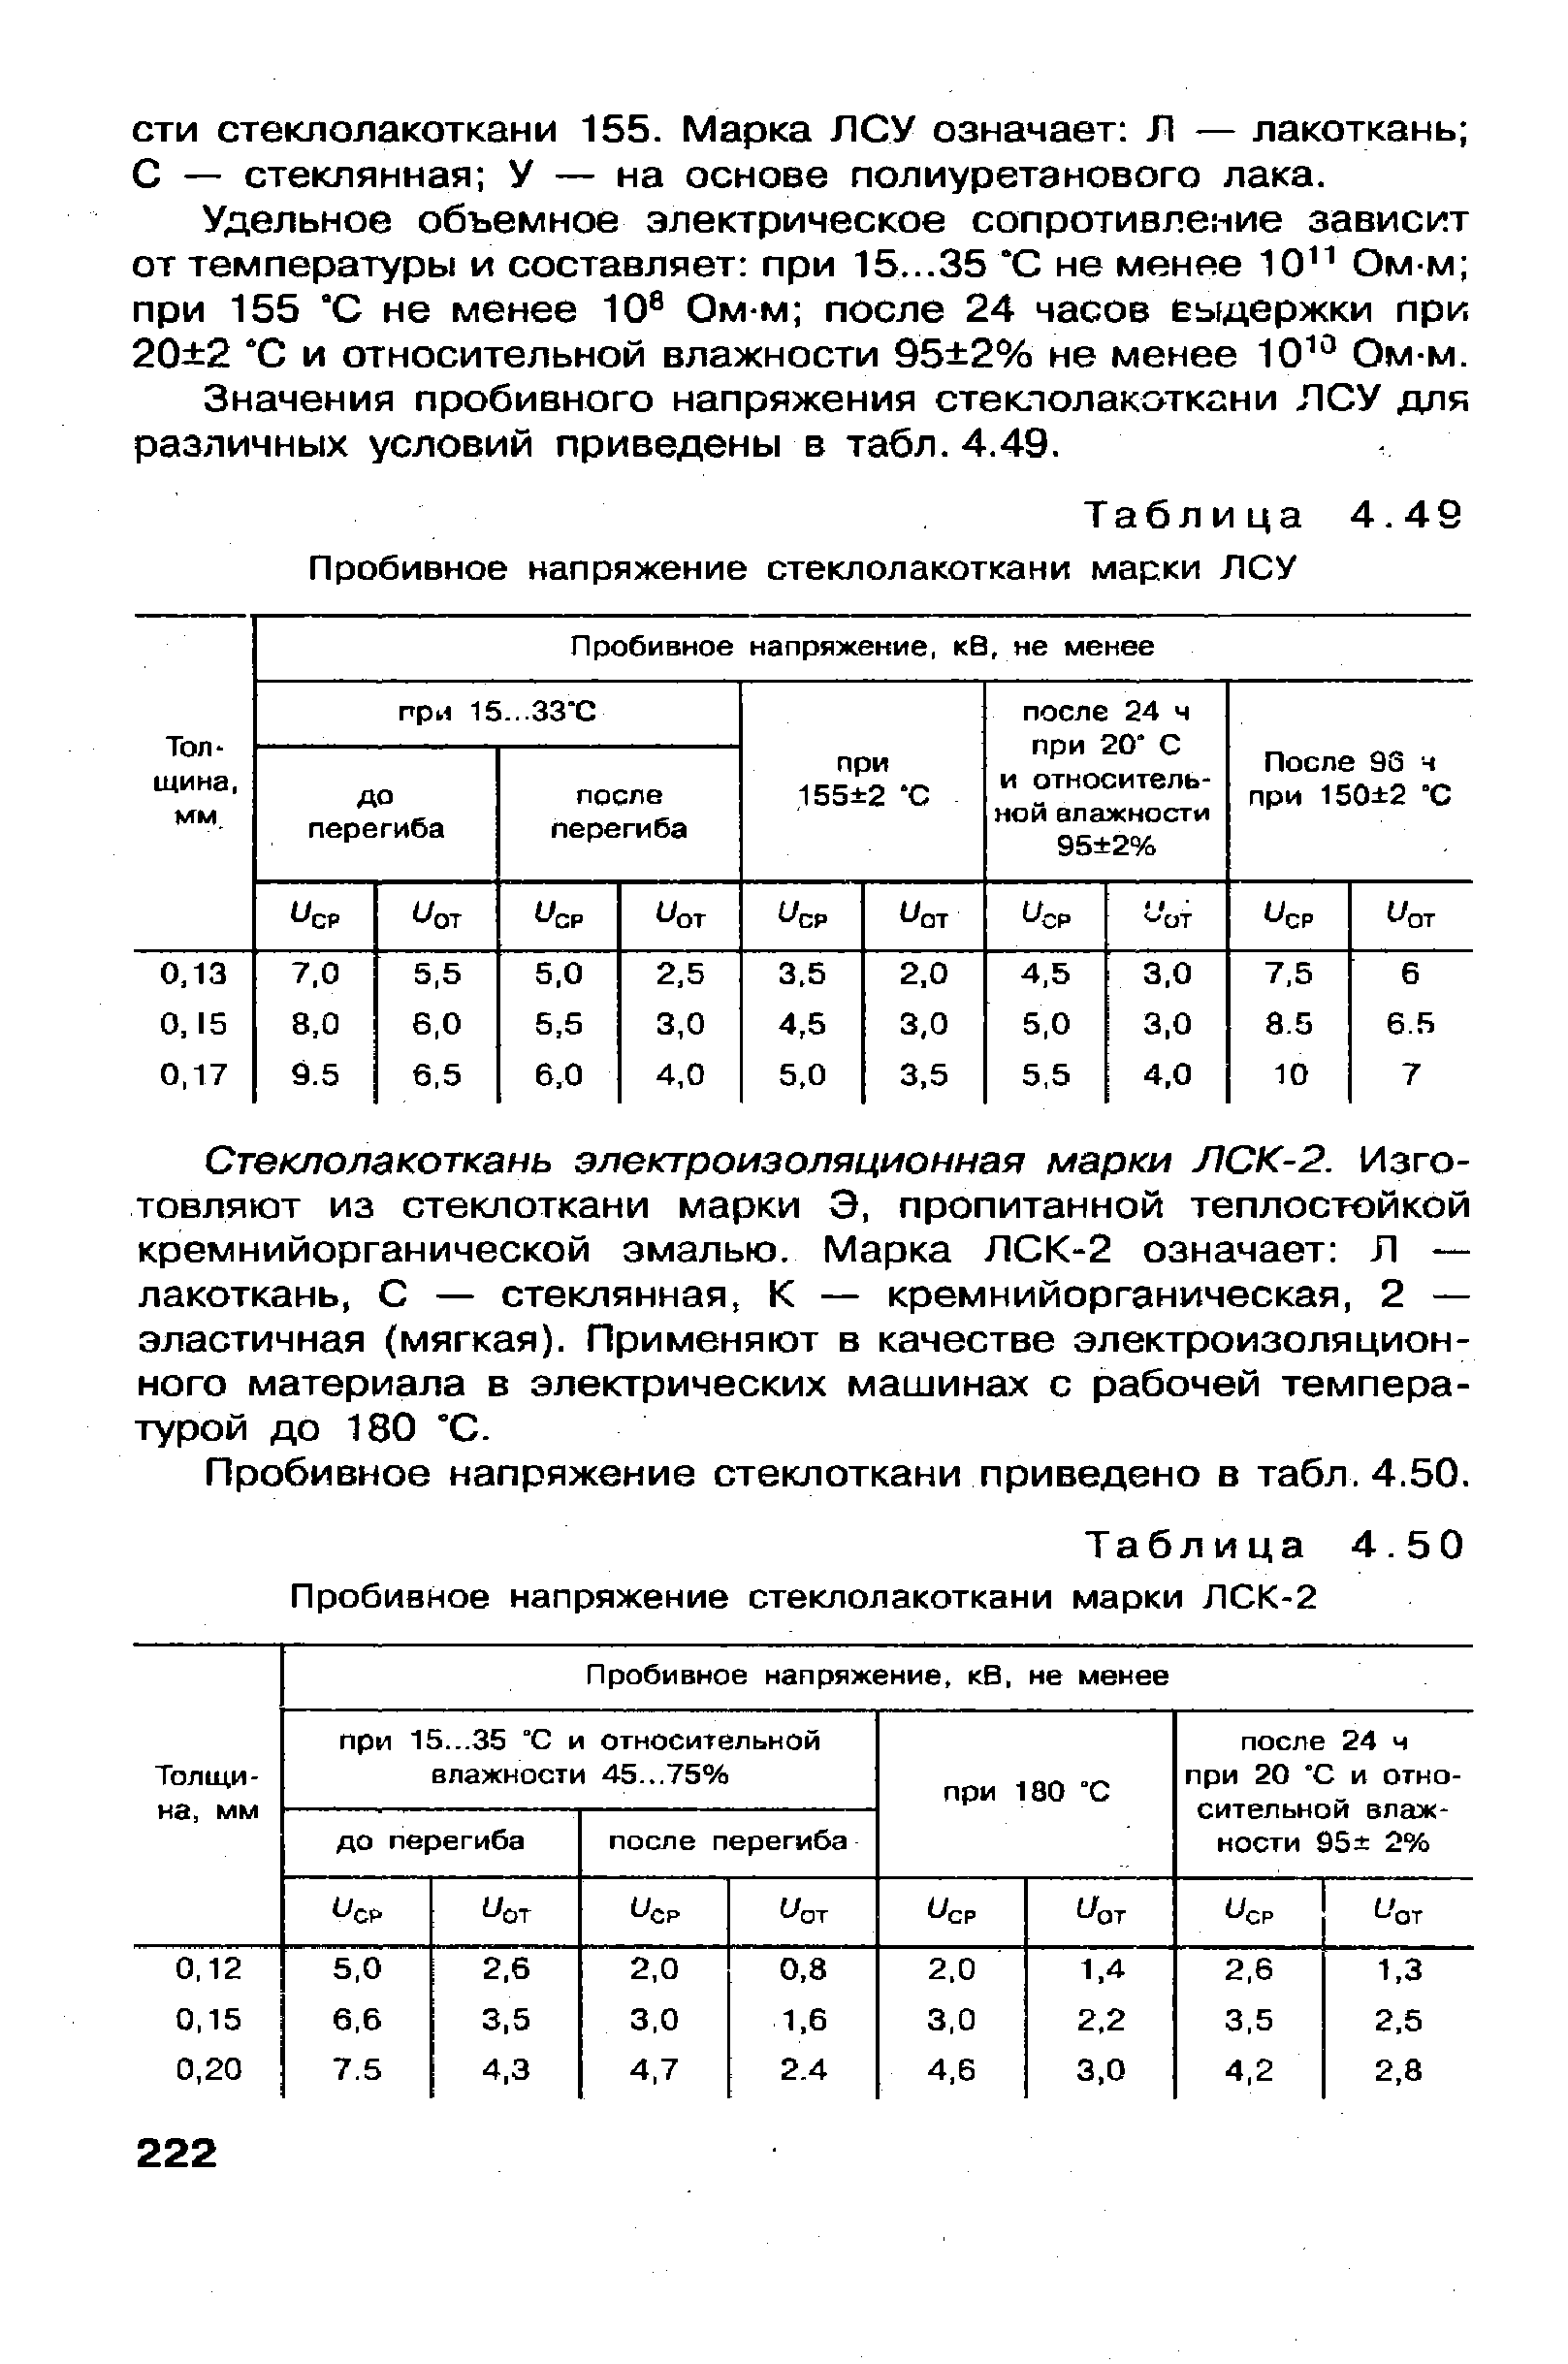 Таблица 4.50 Пробивное напряжение стеклолакоткани марки ЛСК-2
